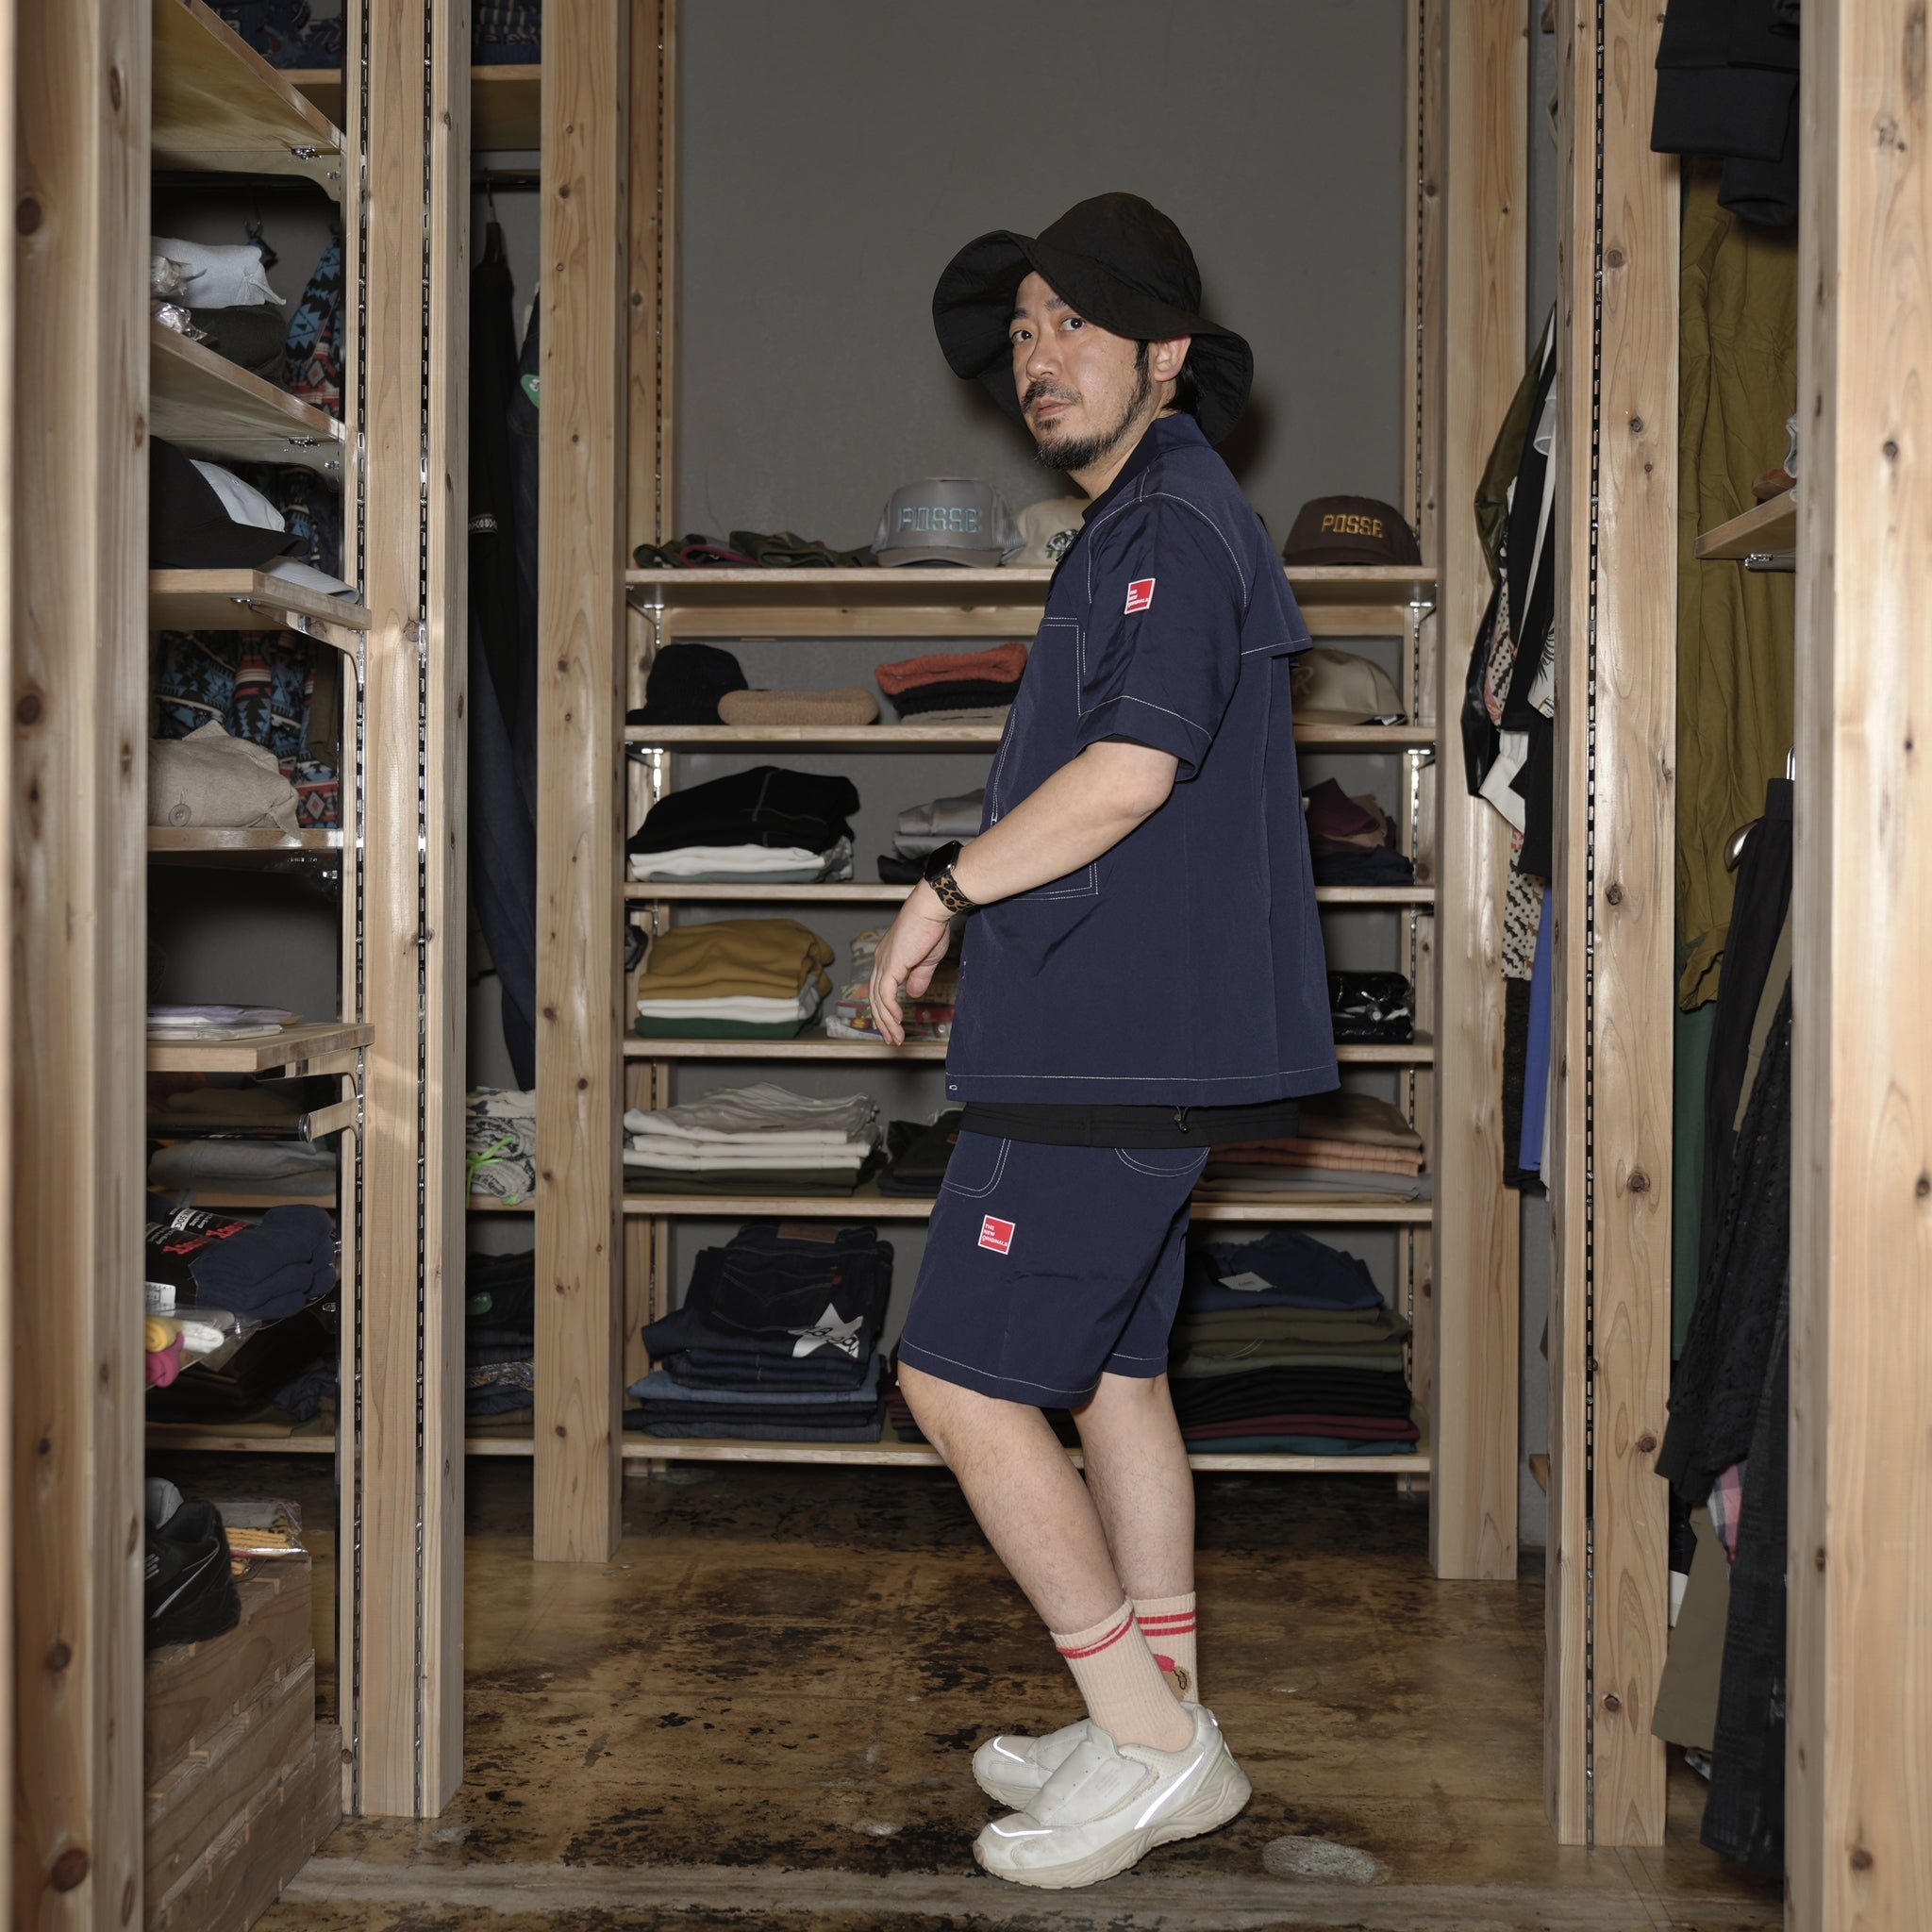 No:tno-11 | Name:Garage Shorts | Color:Stock Navy【THE NEW ORIGINALS_ザ ニュー オリジナルズ】